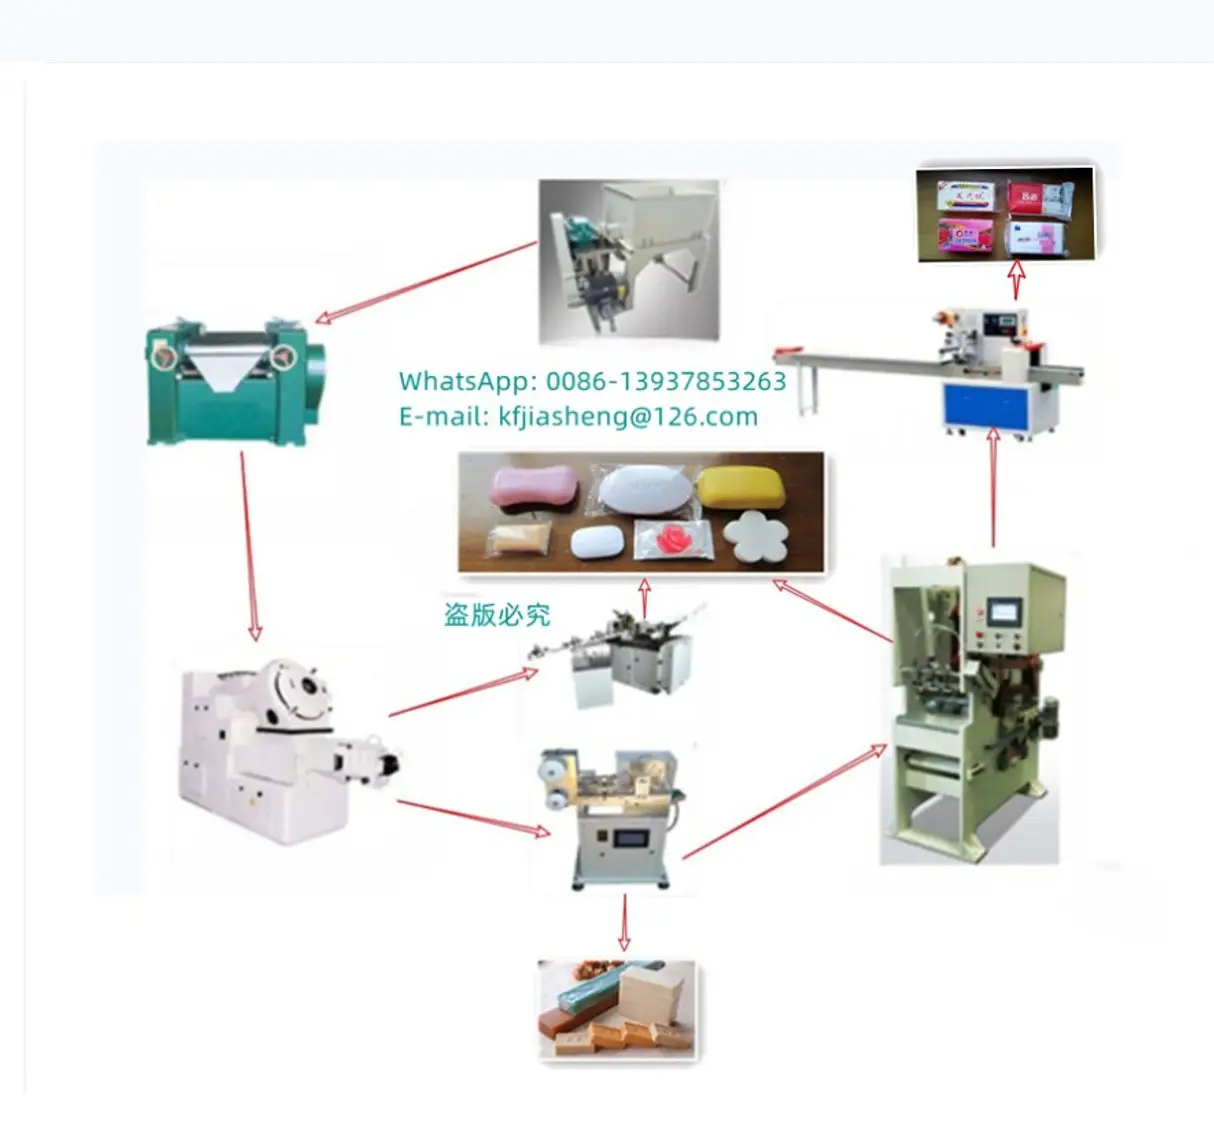 ماكينة إعداد البار الصابون الأخضر خط الانتهاء/ خط صناعة الصابون الصغير/ ماكينة صناعة الصابون شبه الأوتوماتيكية الصغيرة